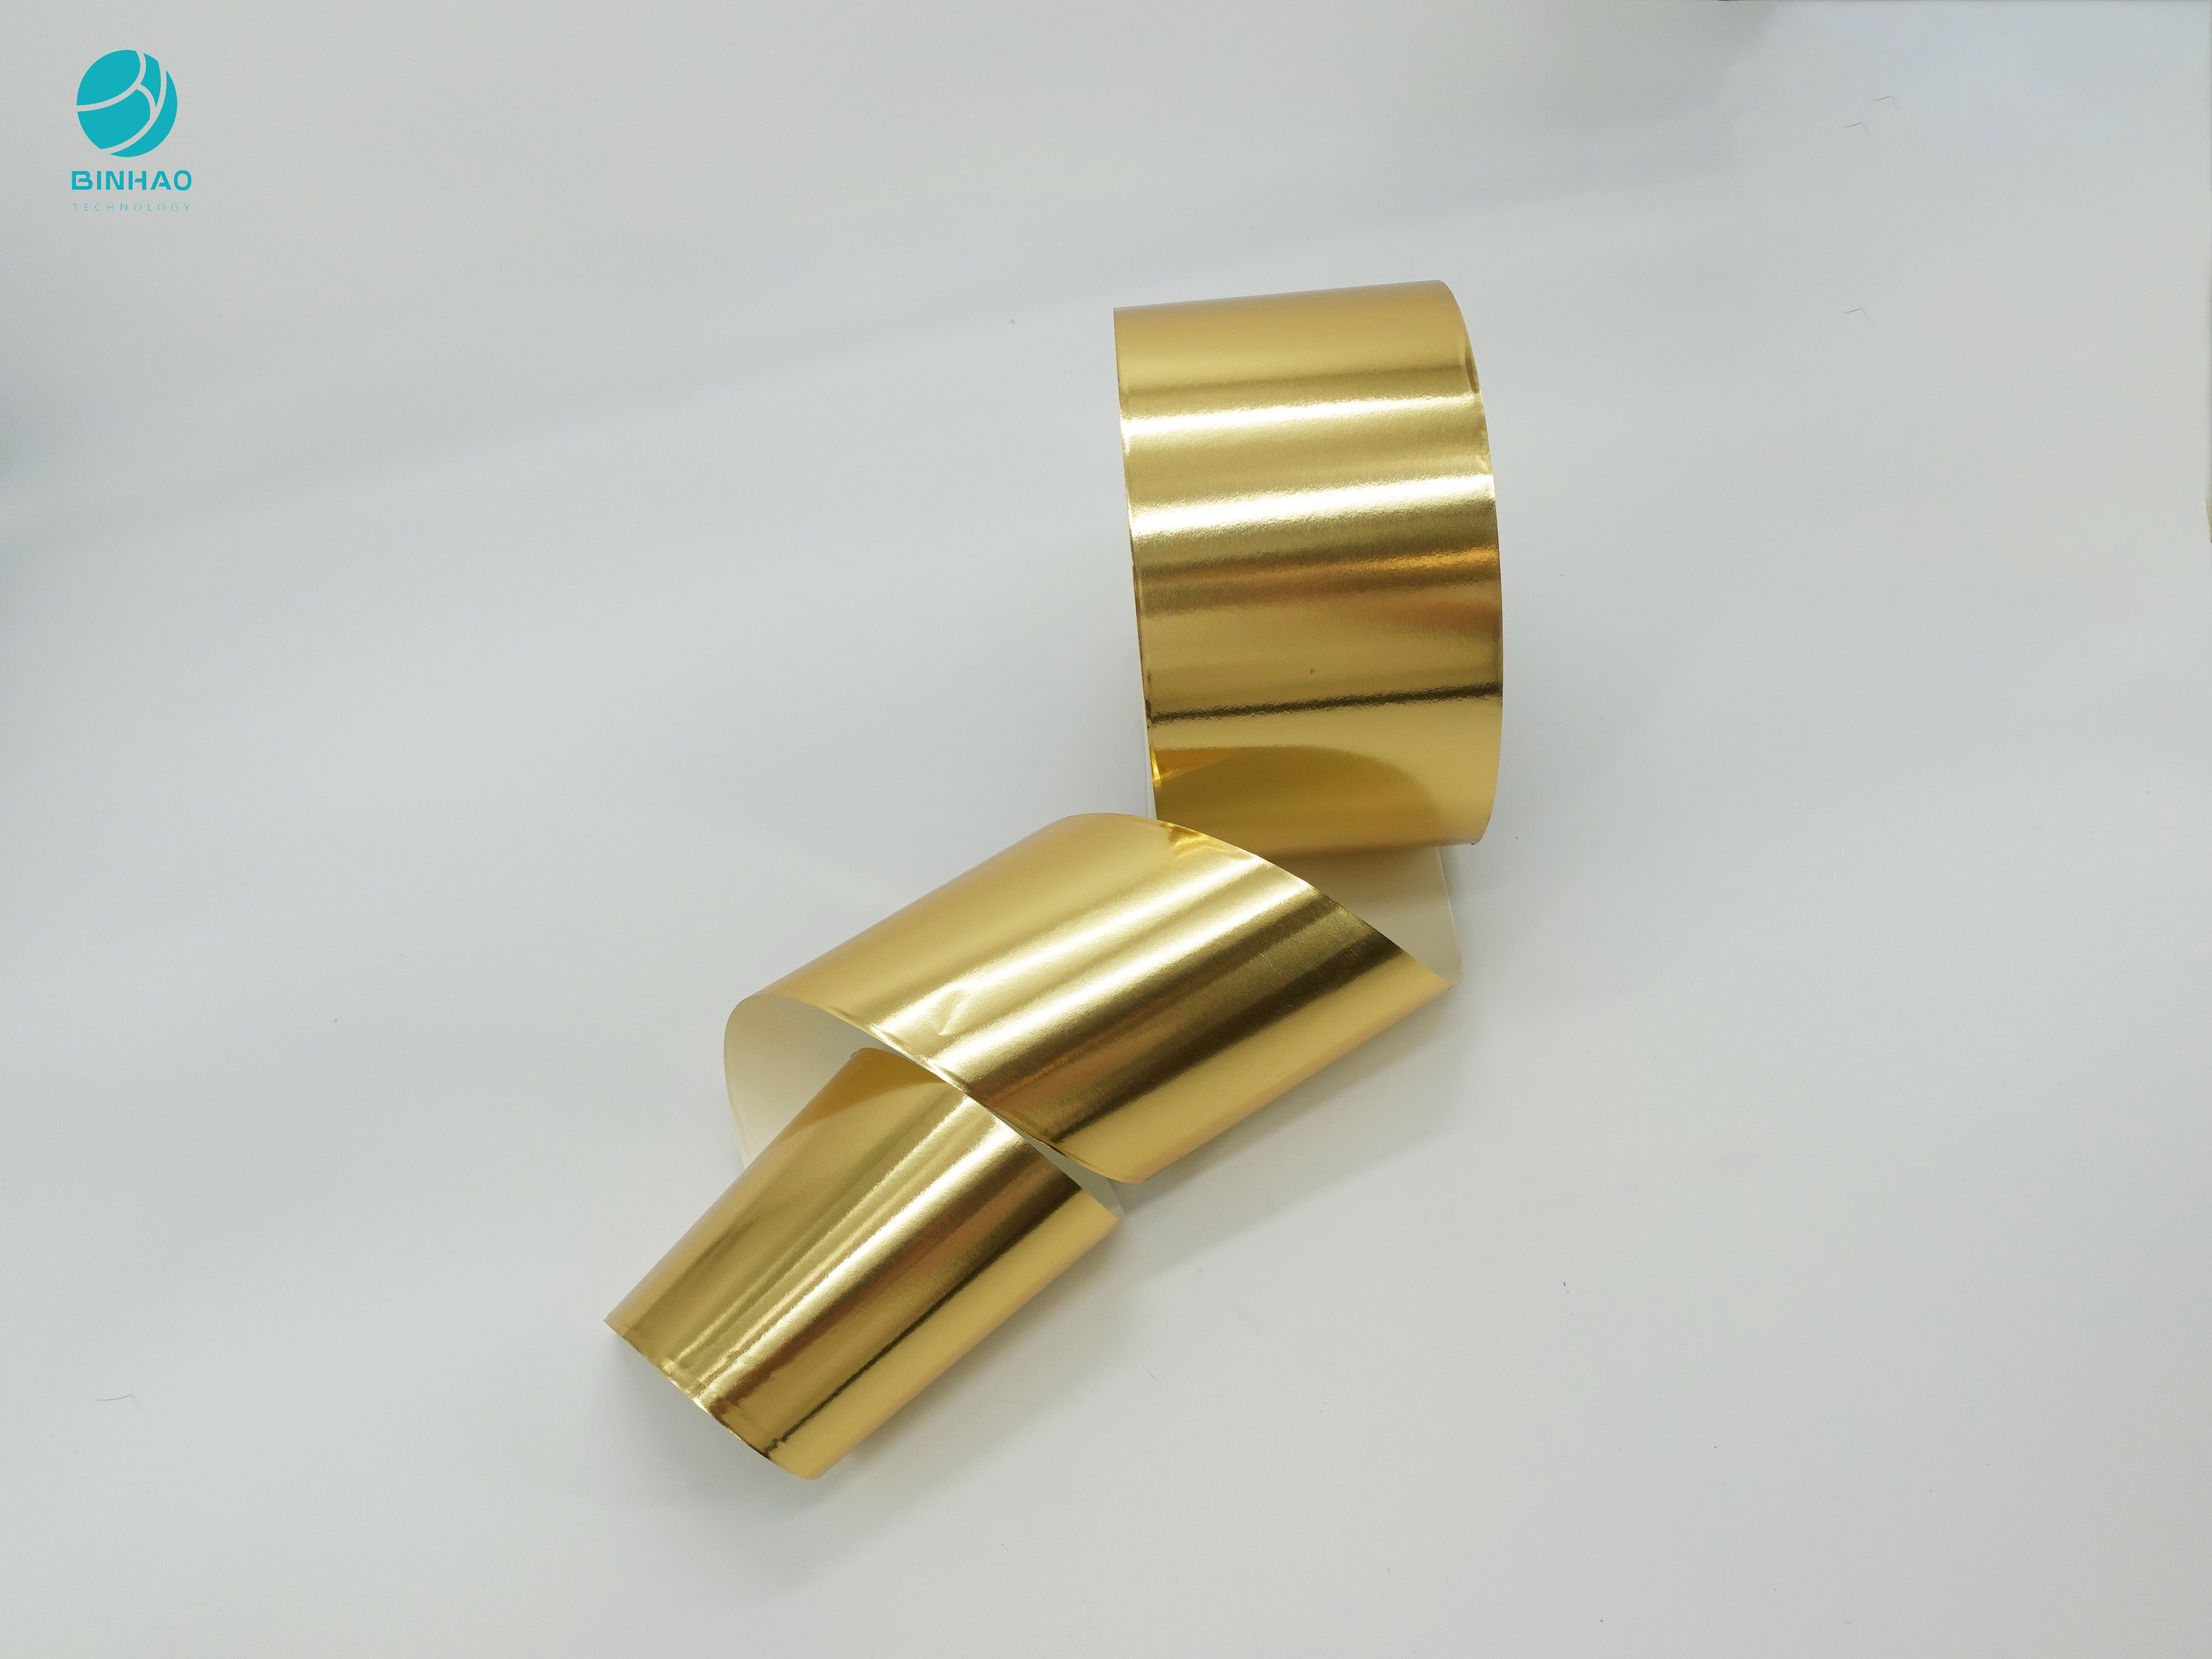 86mm Goldglattes zusammengesetztes Aluminiumfolie-Oberflächenpapier für Zigaretten-Paket